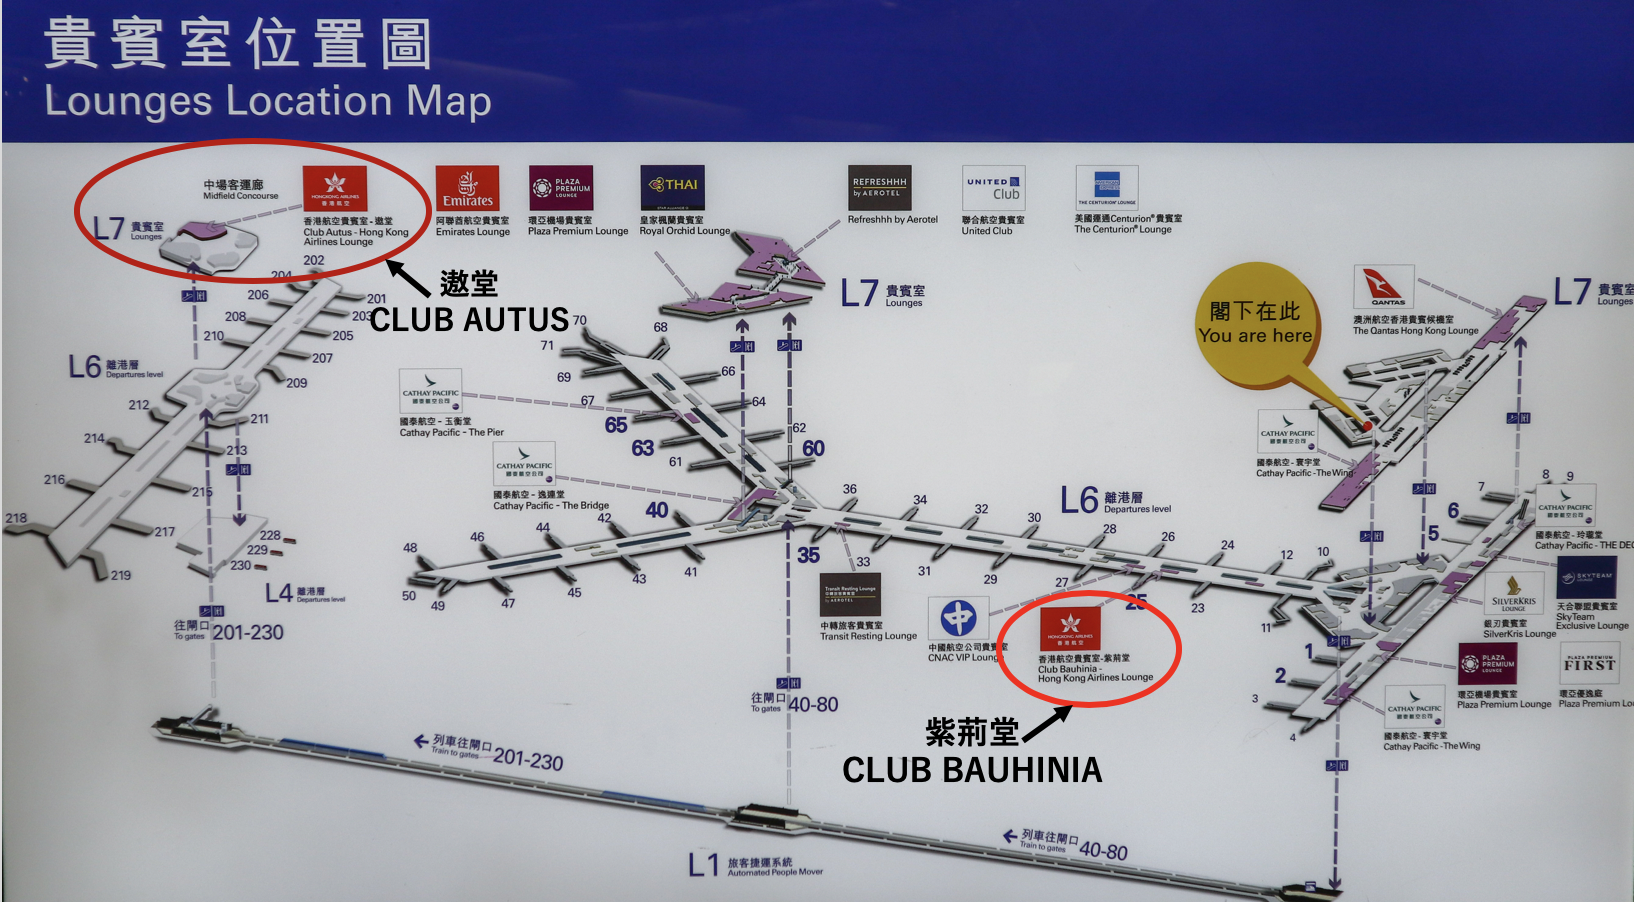 遨堂CLUB AUTUS︱現已重開！香港航空貴賓室體驗圖文報告＋入Lounge方法！提供各種輕食 可以帶埋上機！